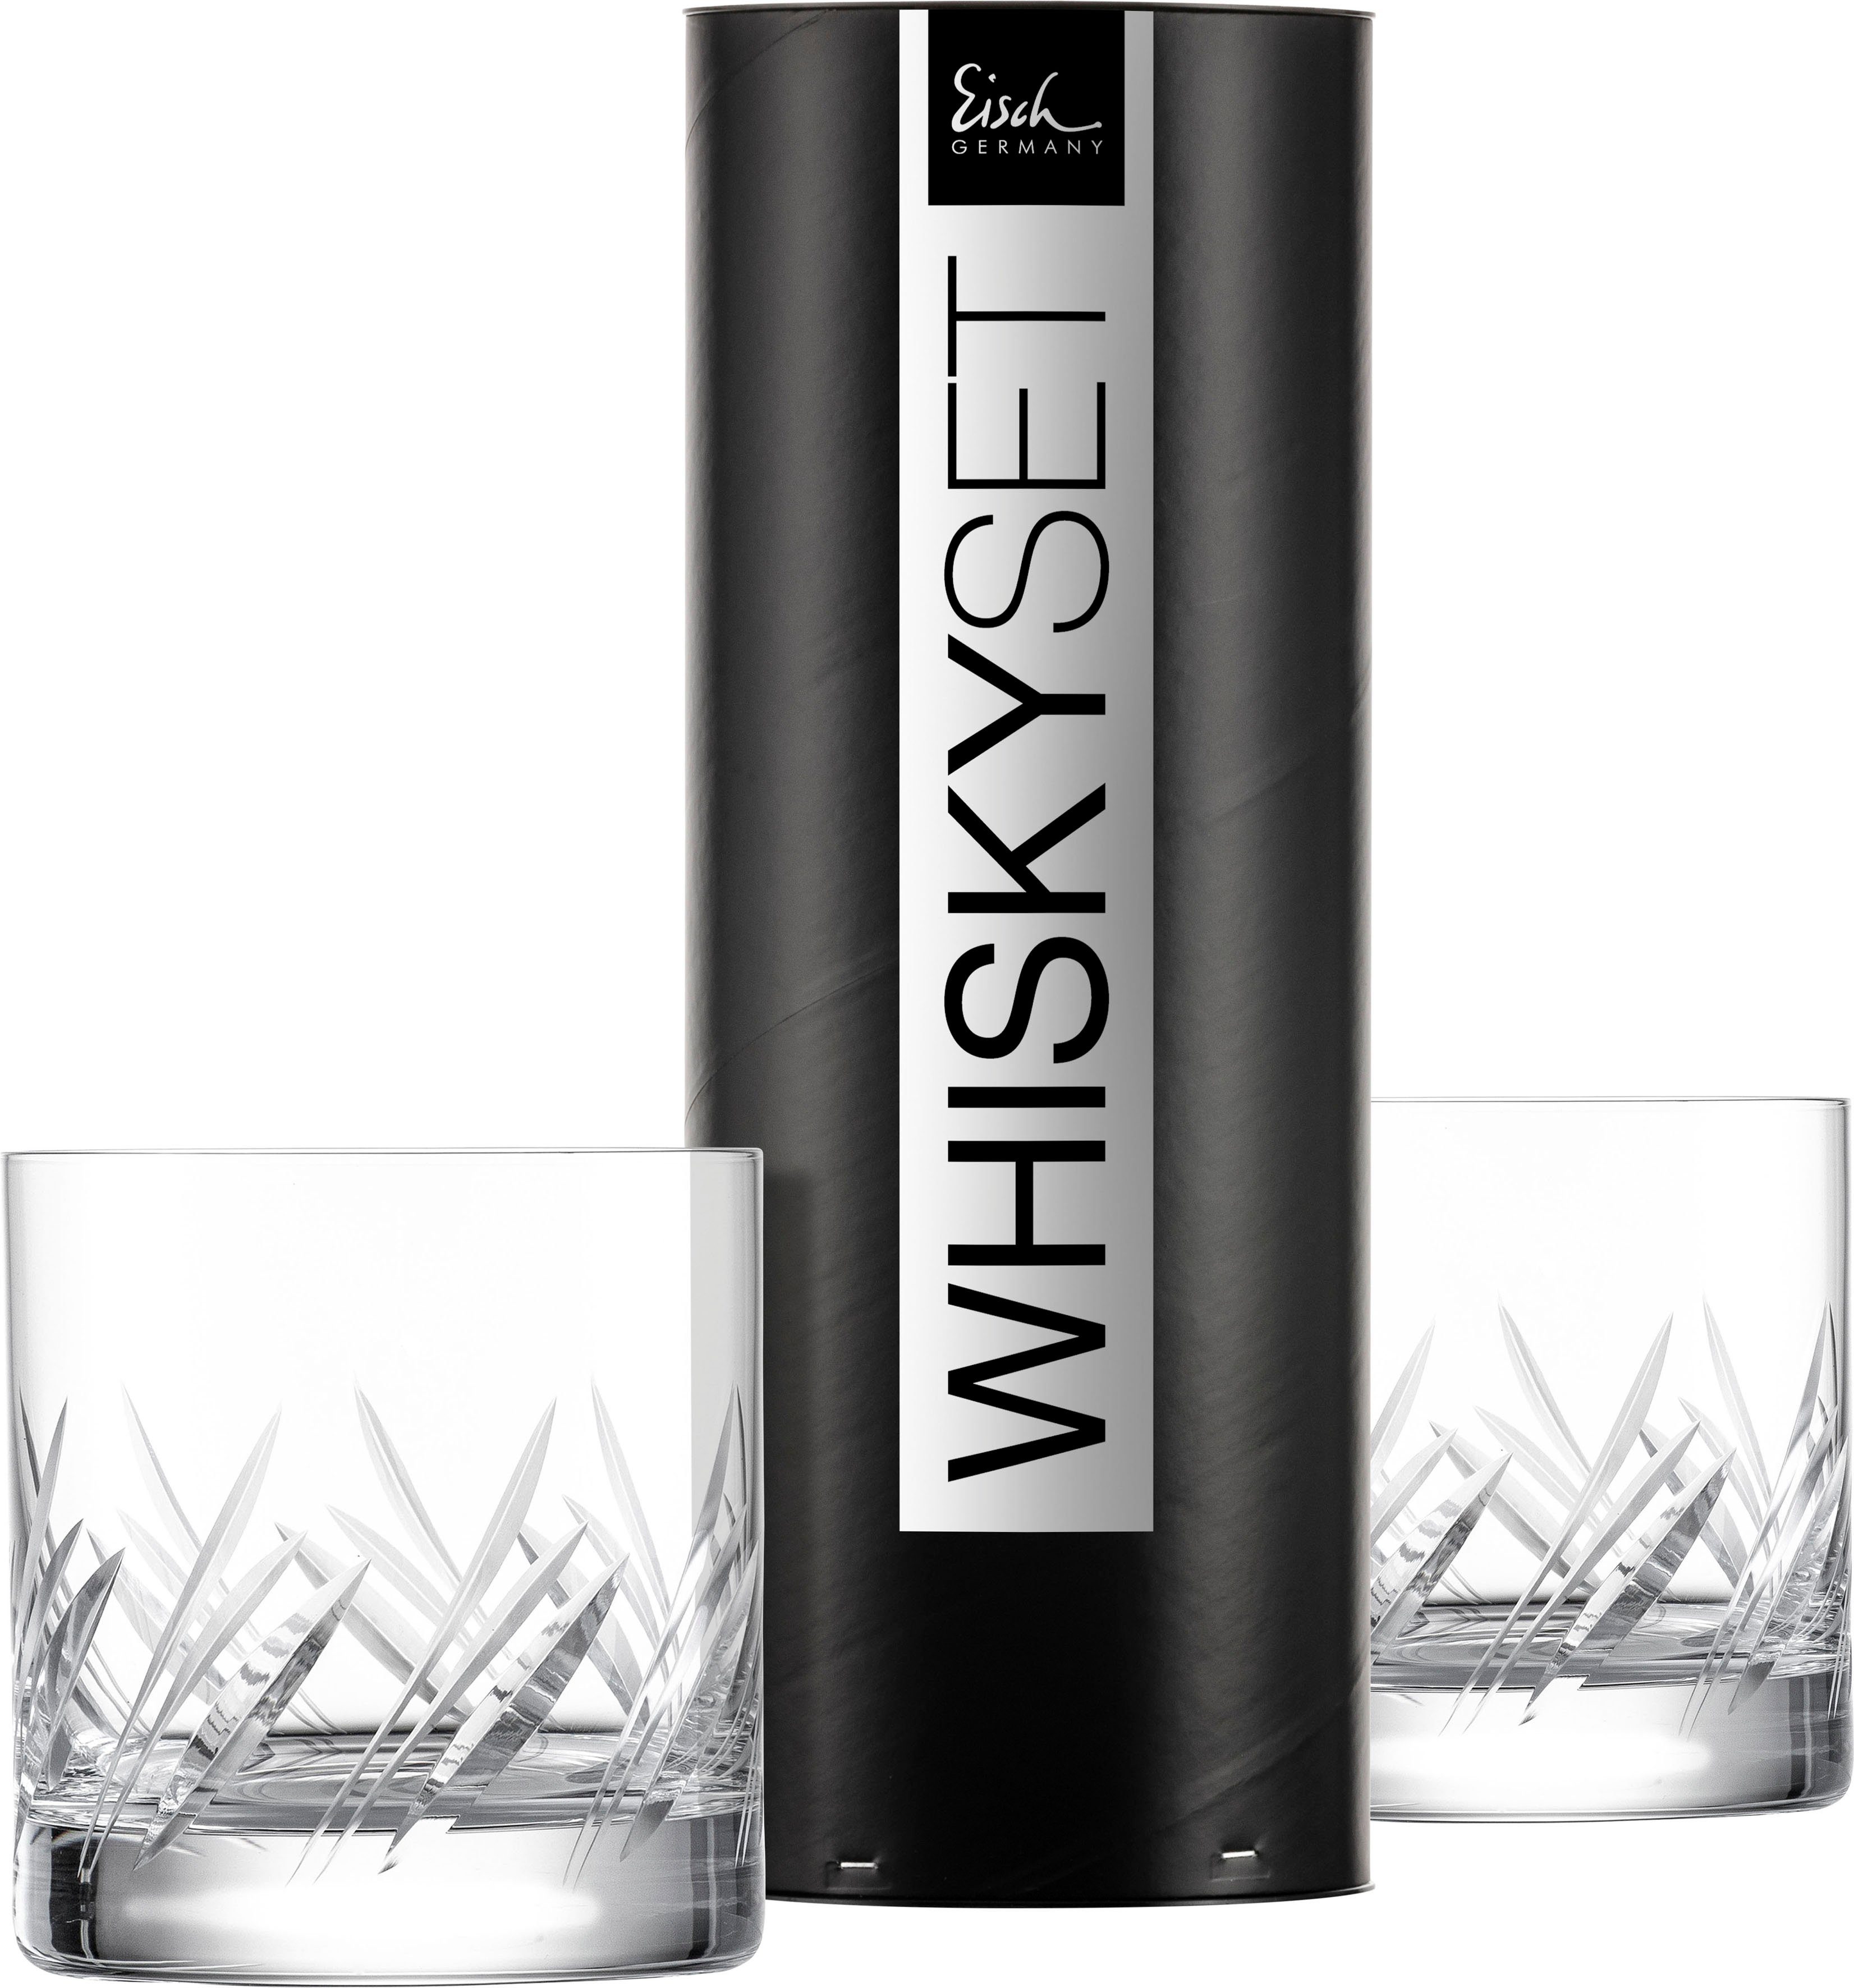 Eisch Whiskyglas GENTLEMAN, Kristallglas, Handarbeit, geschliffen, 400 ml, 2 -teilig, Made in Germany